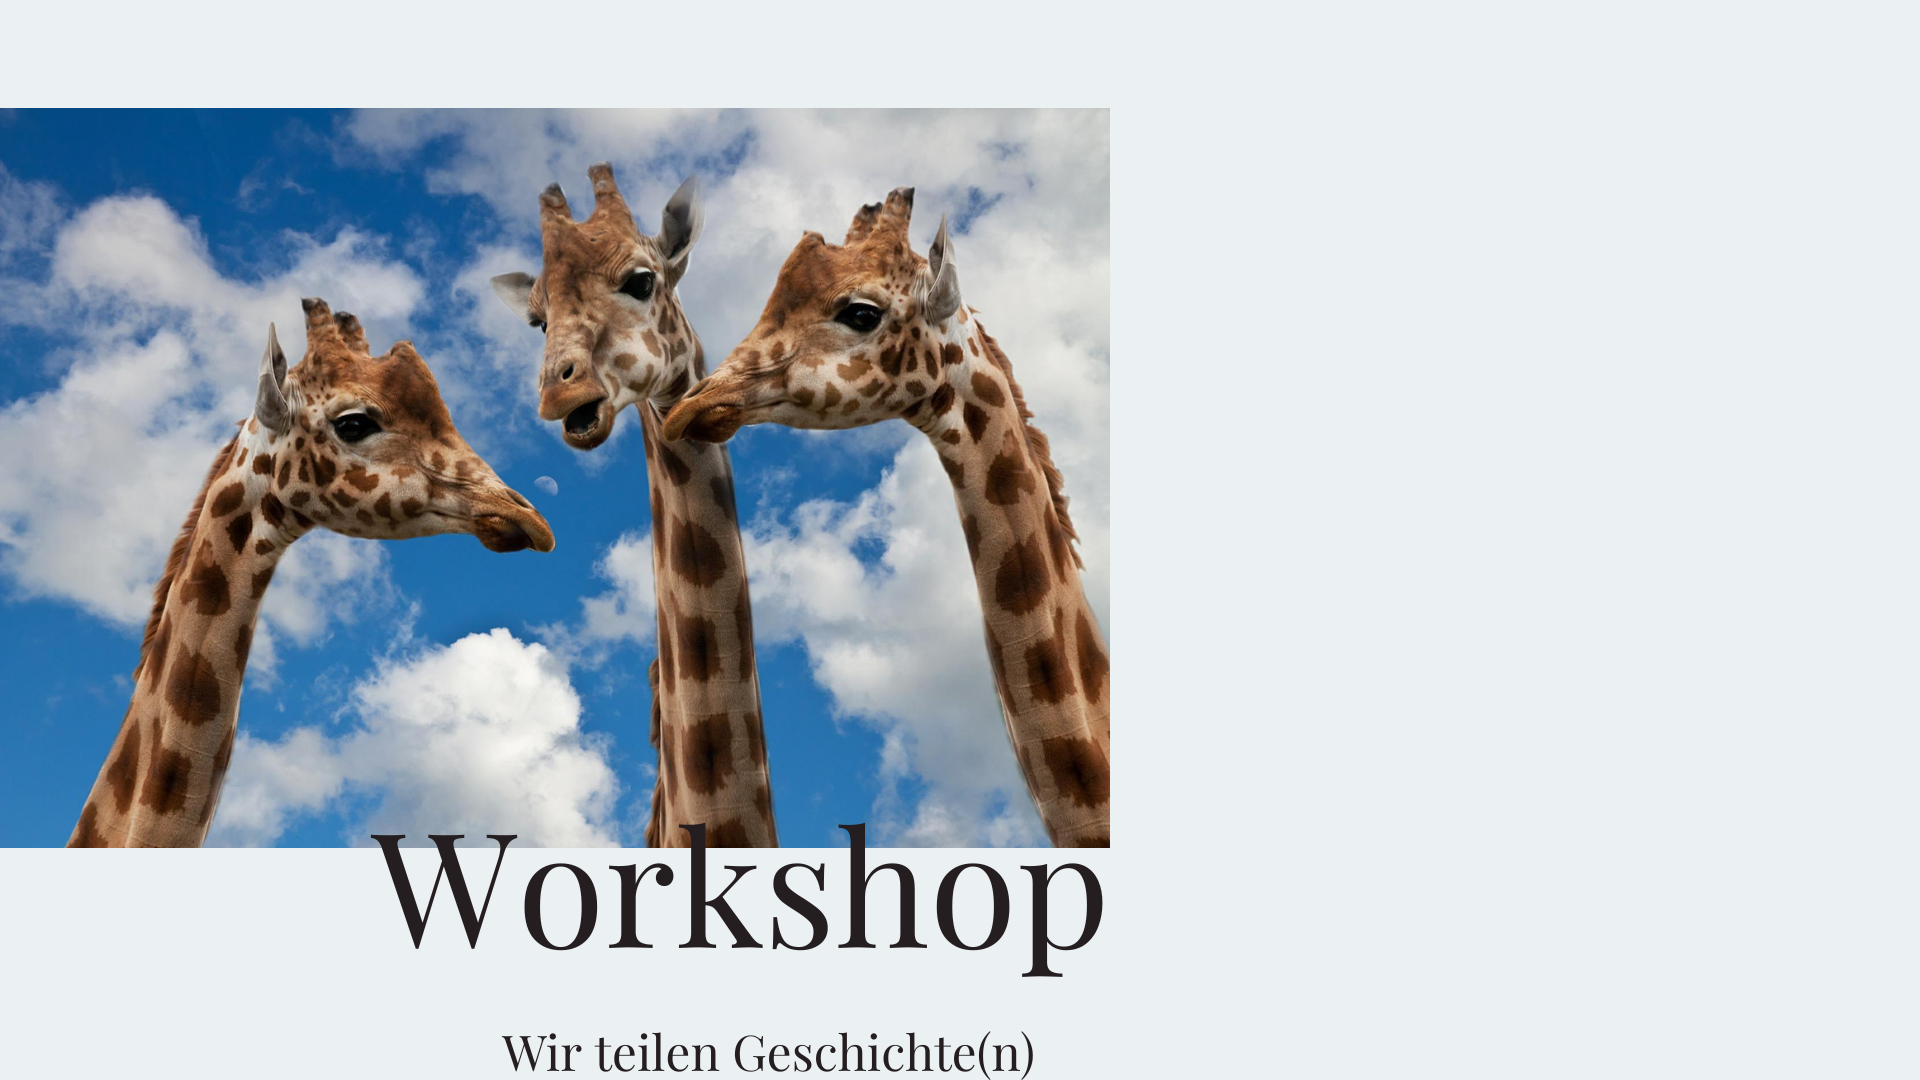 Workshop: Wir teilen Geschichte(n)